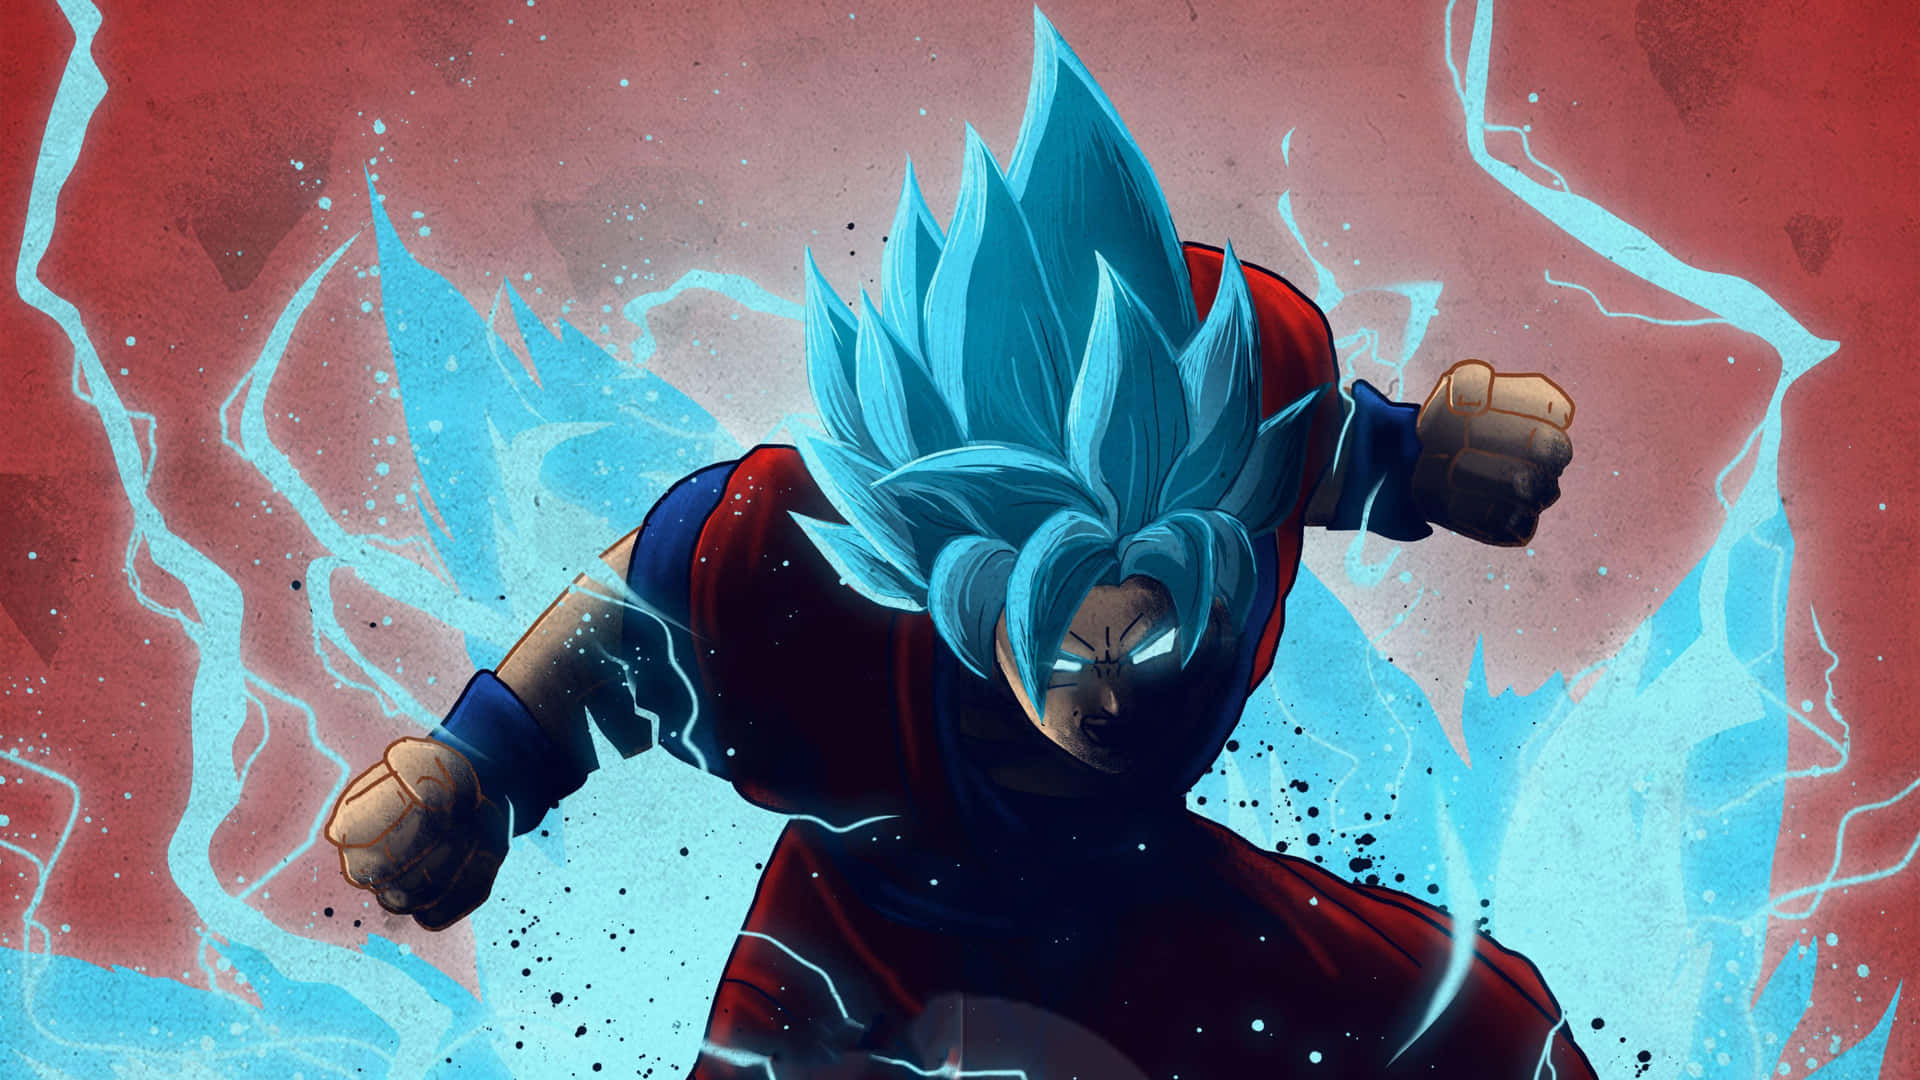 Imagemdo Goku Azul Brilhante.